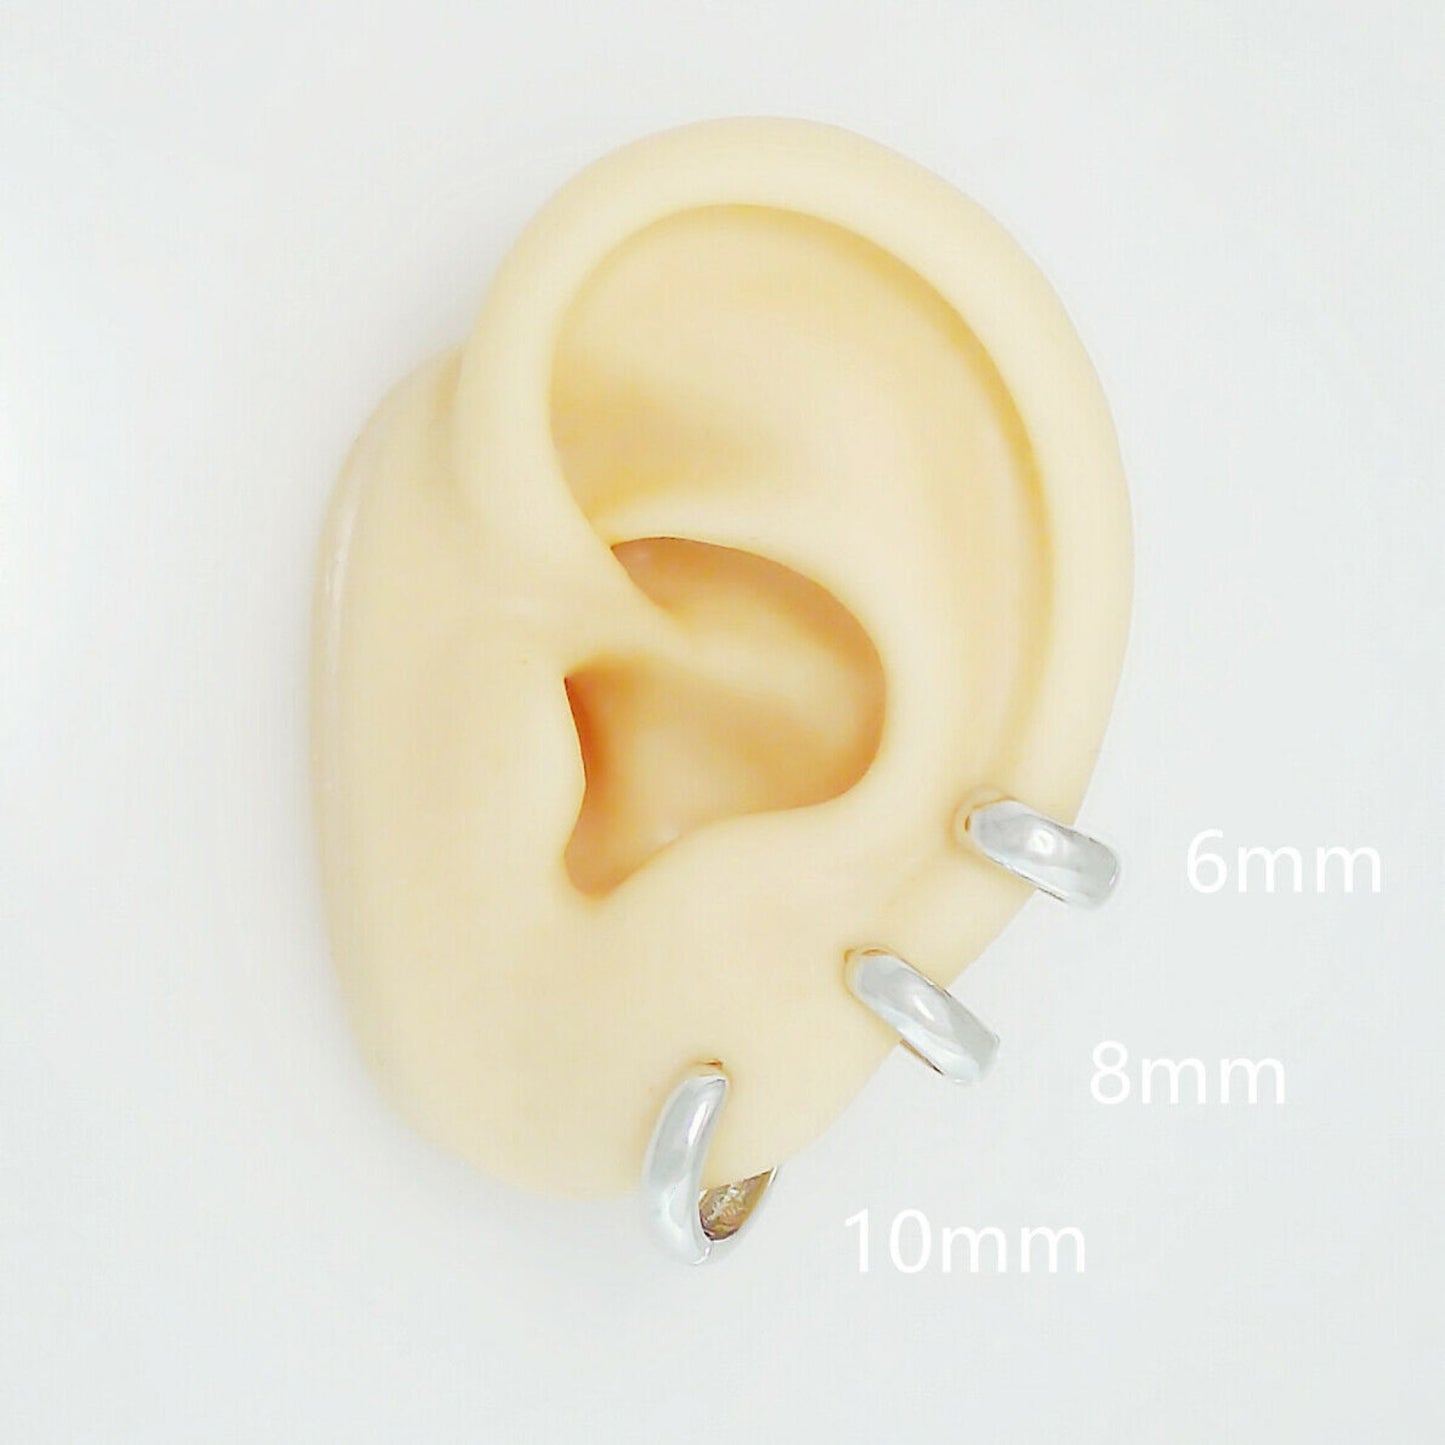 Rhodium-plated Sterling Silver 3mm Band Huggie Sleeper Hoop Earrings for Unisex